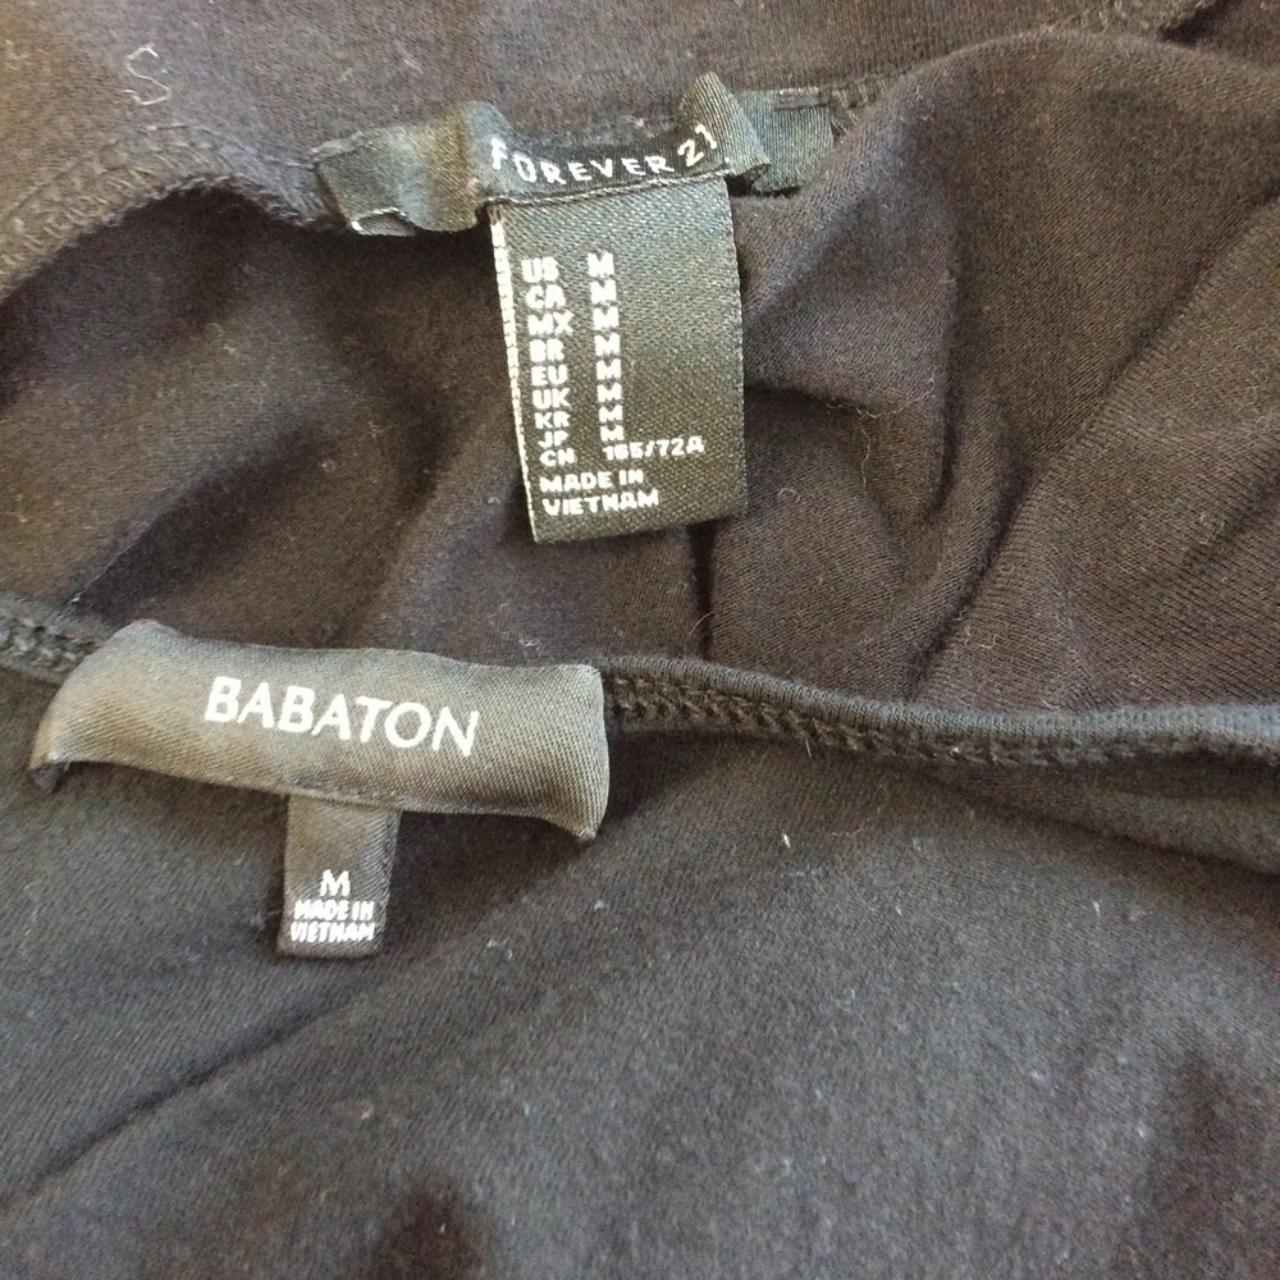 Product Image 4 - #Babaton Forever 21 M Black